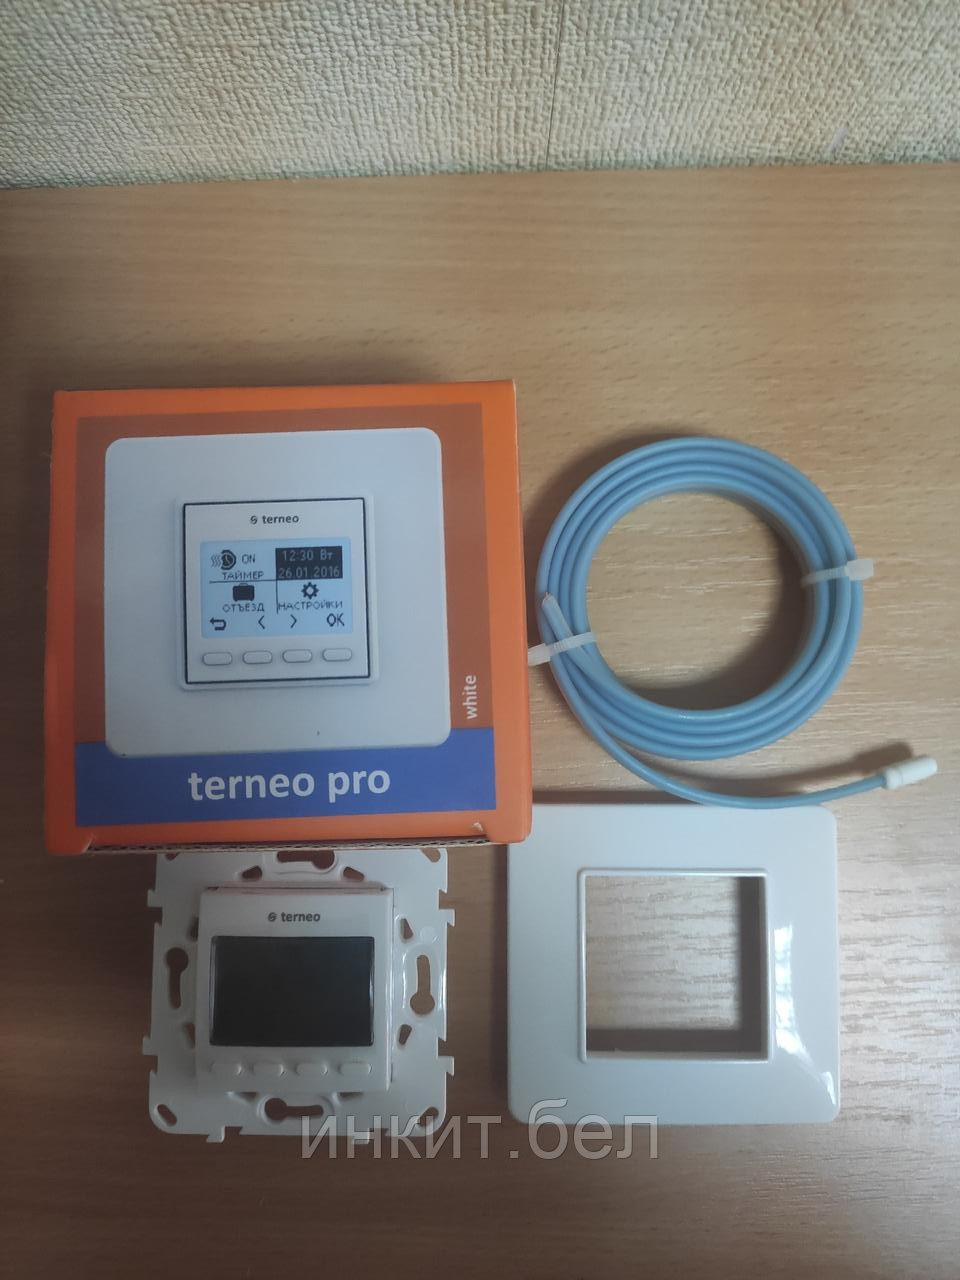 Терморегулятор программируемый Terneo pro. Работаем с юр. и физ. лицами.